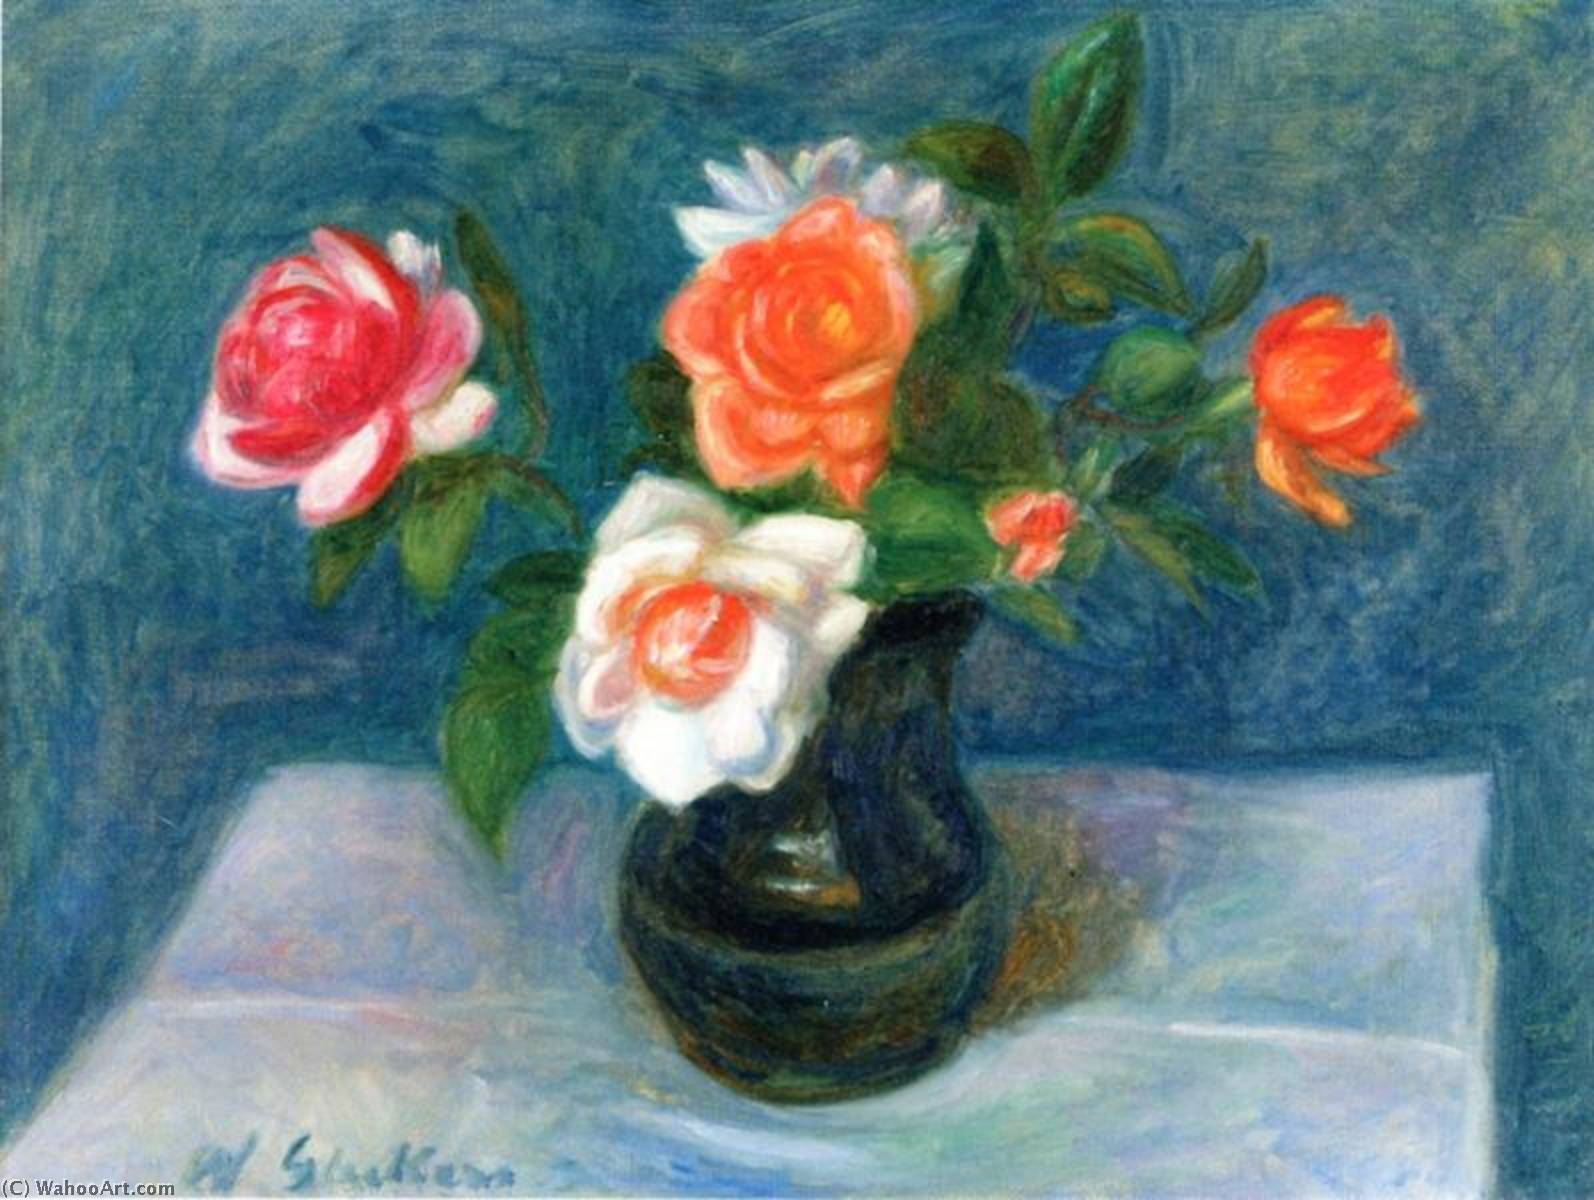 WikiOO.org - Enciclopédia das Belas Artes - Pintura, Arte por William James Glackens - Flowers on a Table